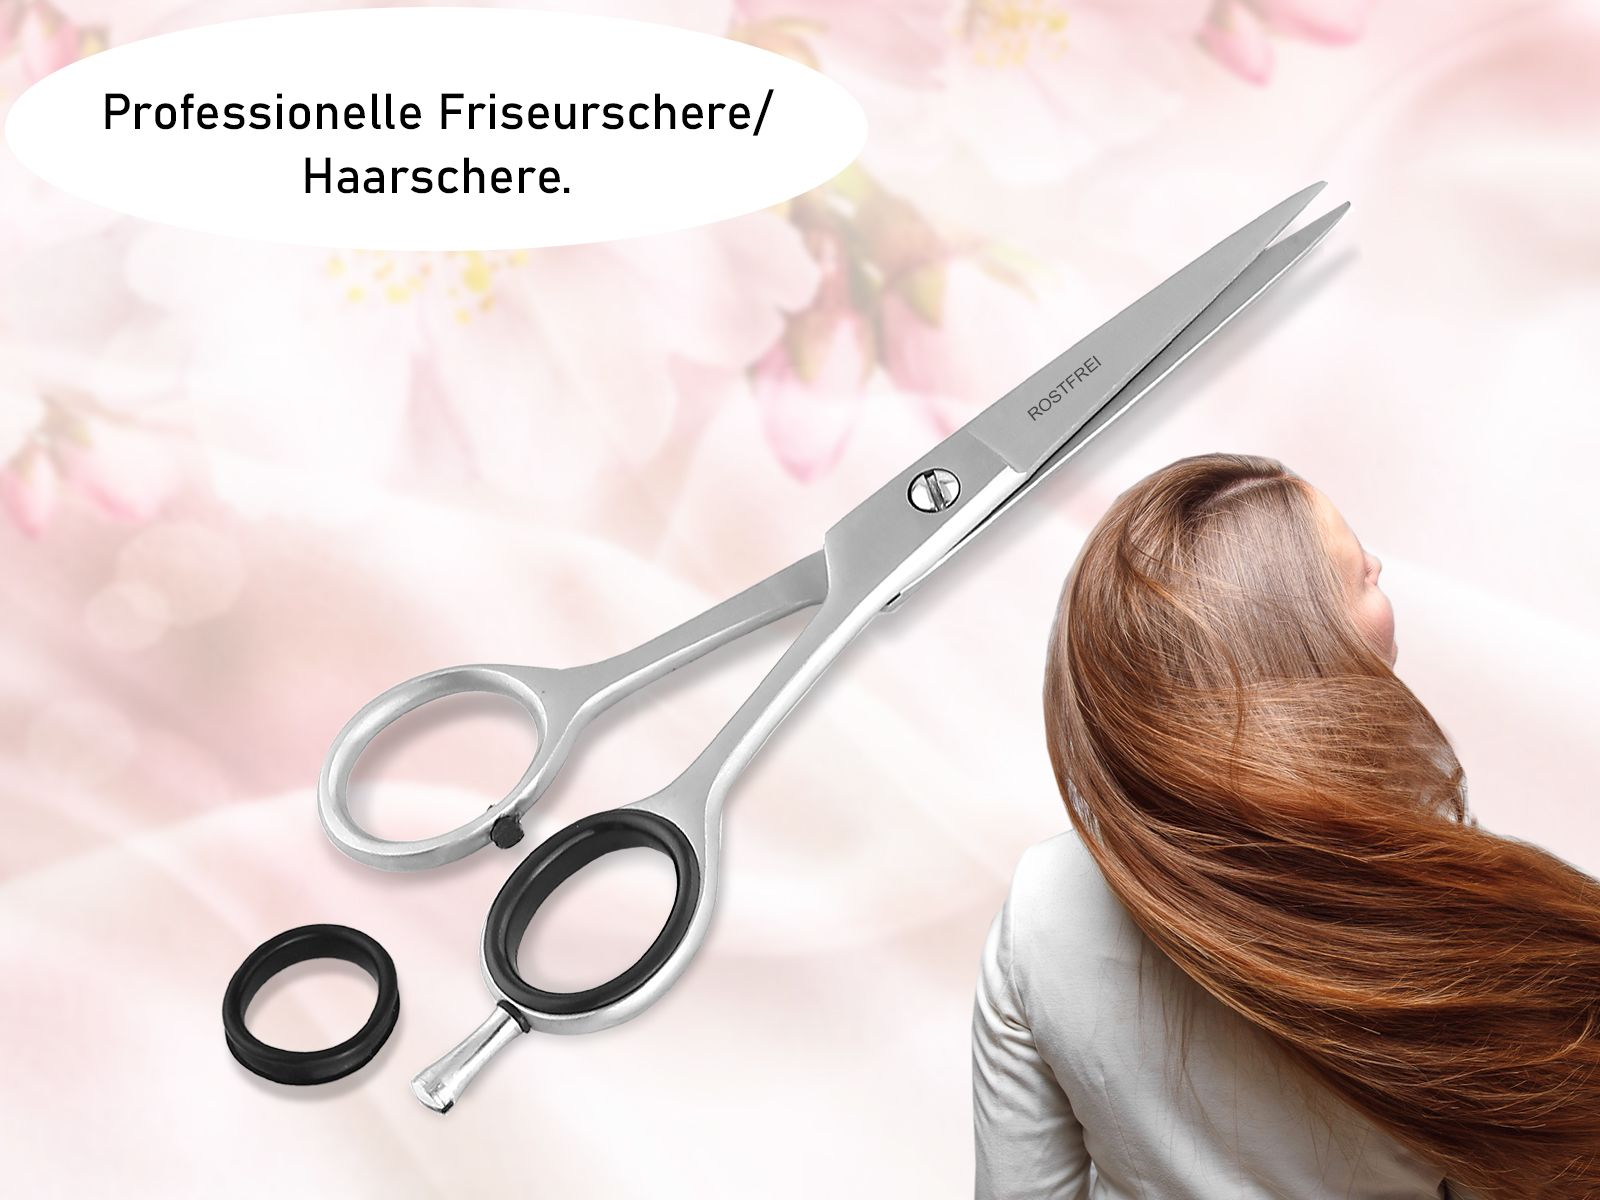 Profi Haarschere Friseurschere 13,97 cm Edelstahl Rostfrei  Haarschneideschere mit Scharfer Schneide für einen perfekten Haarschnitt  81352744